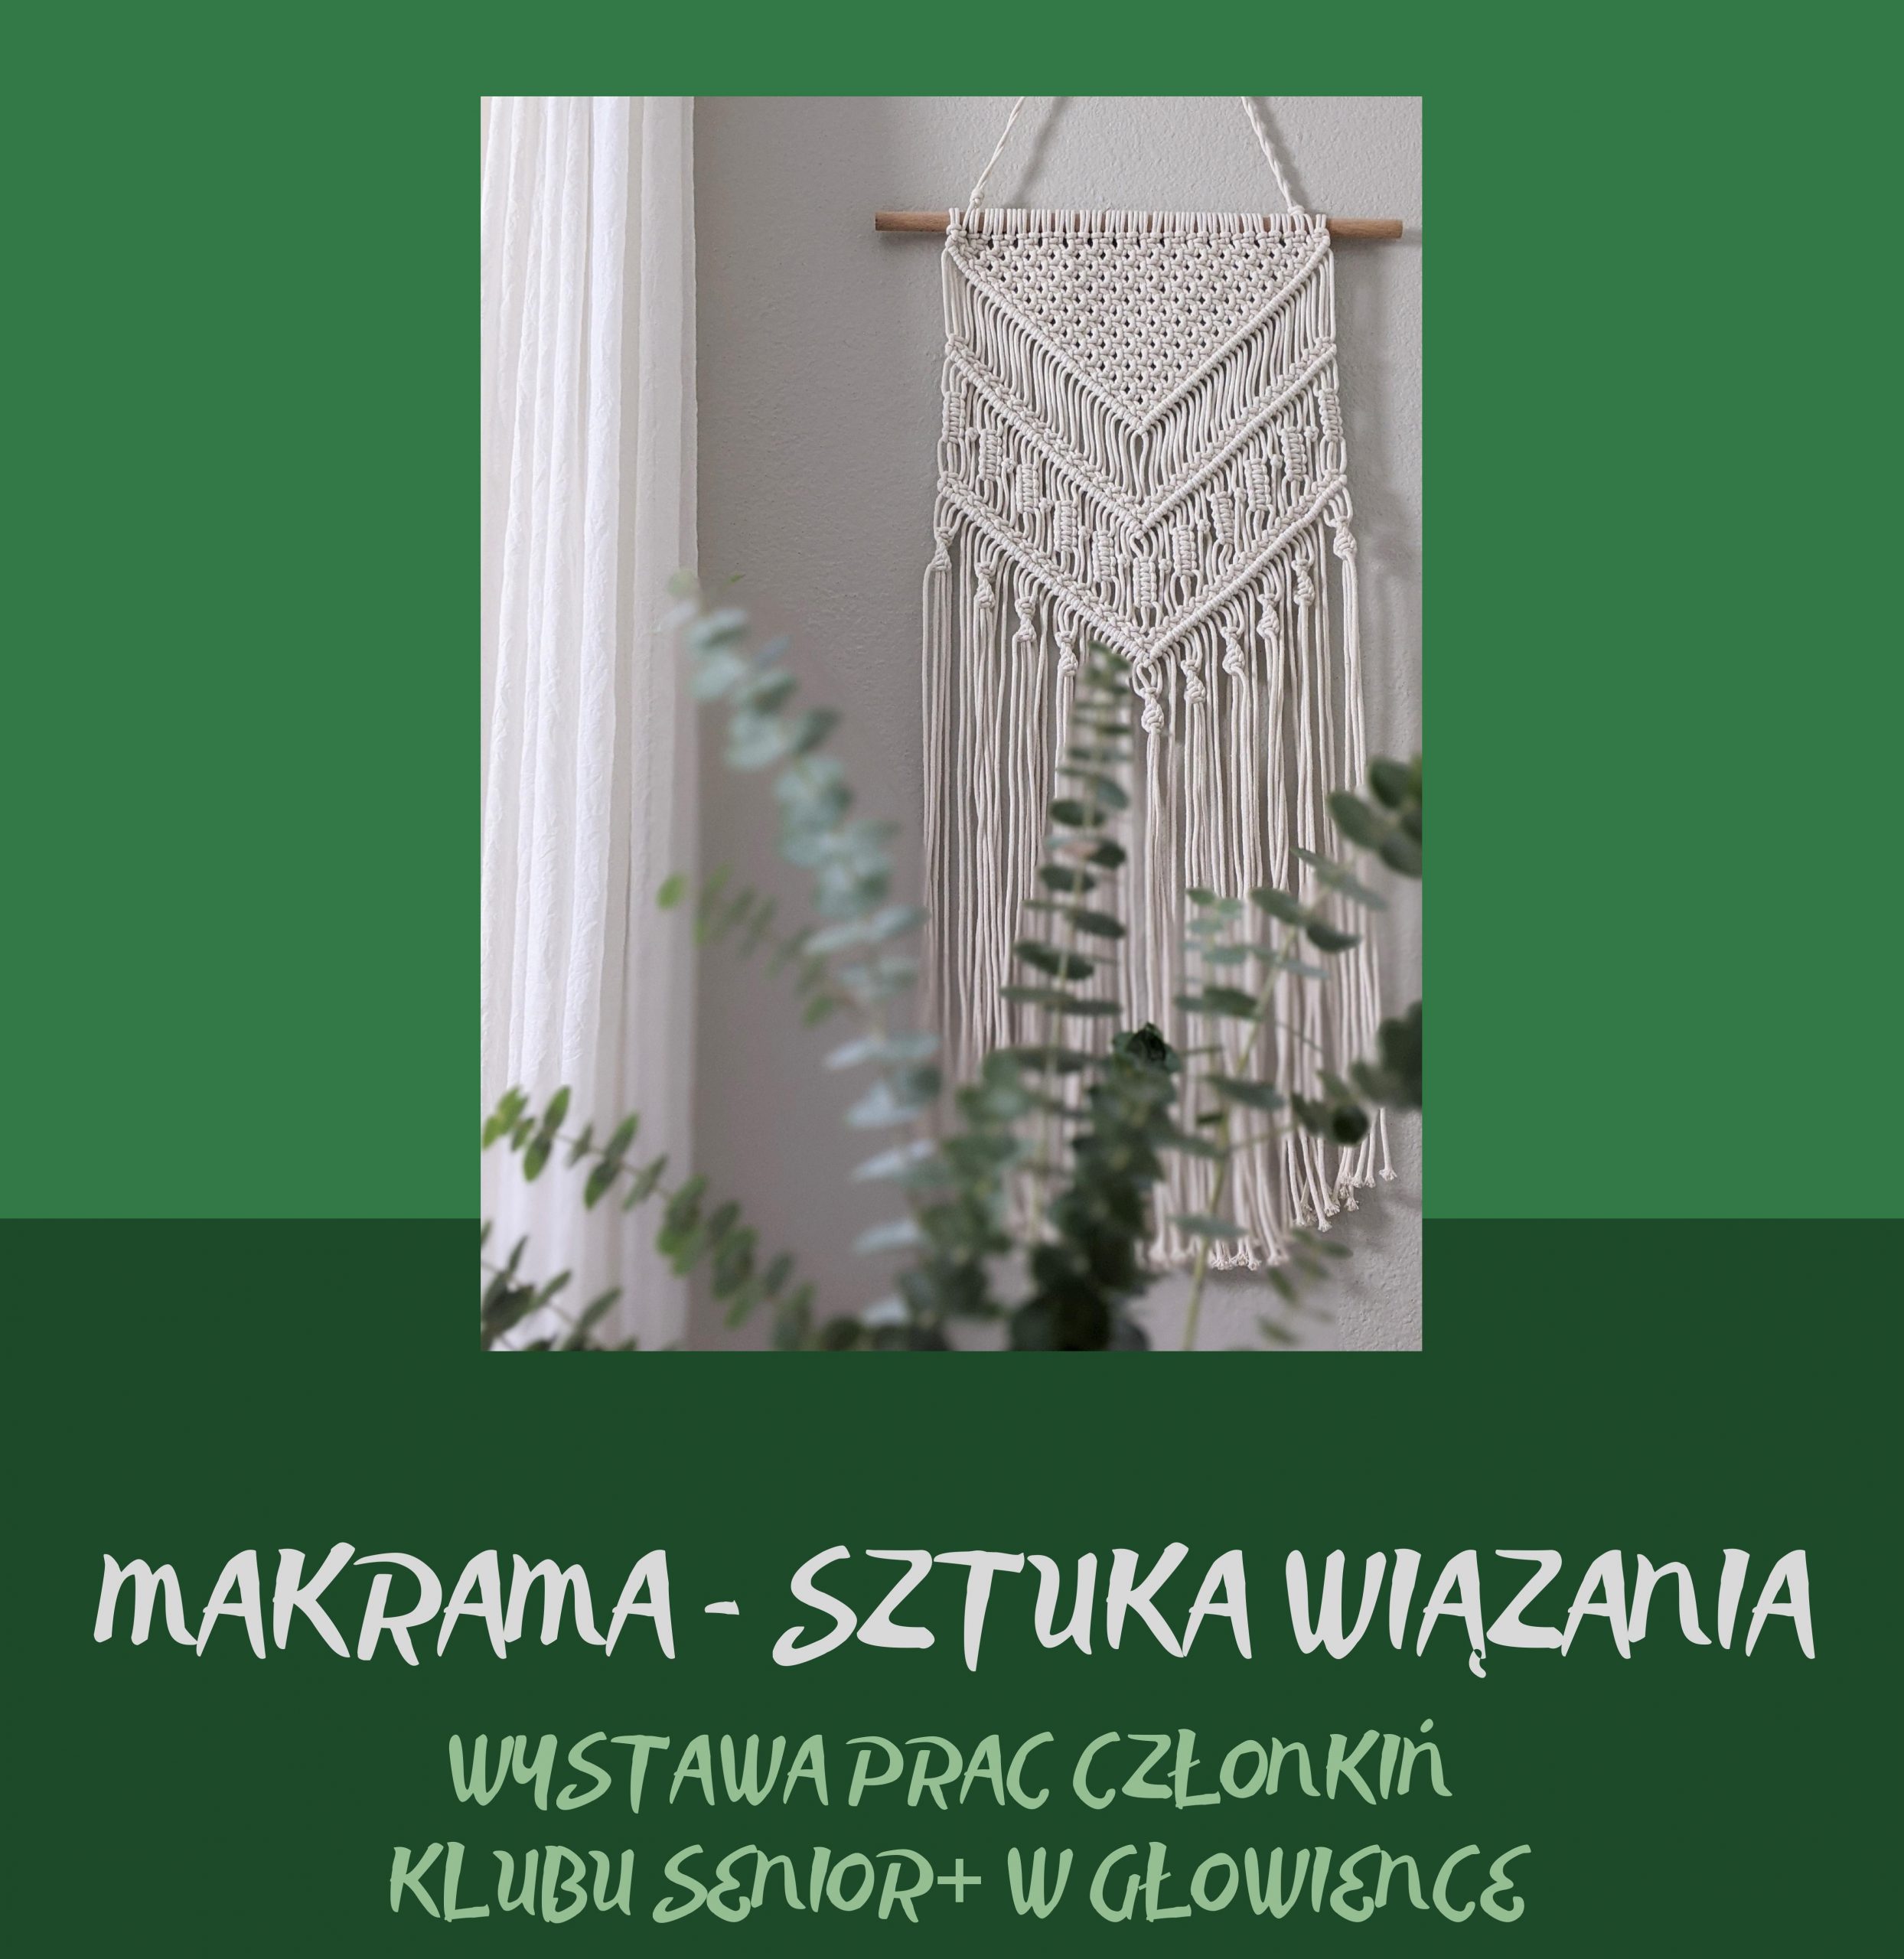 You are currently viewing Wystawa makramy – biblioteka w Głowience